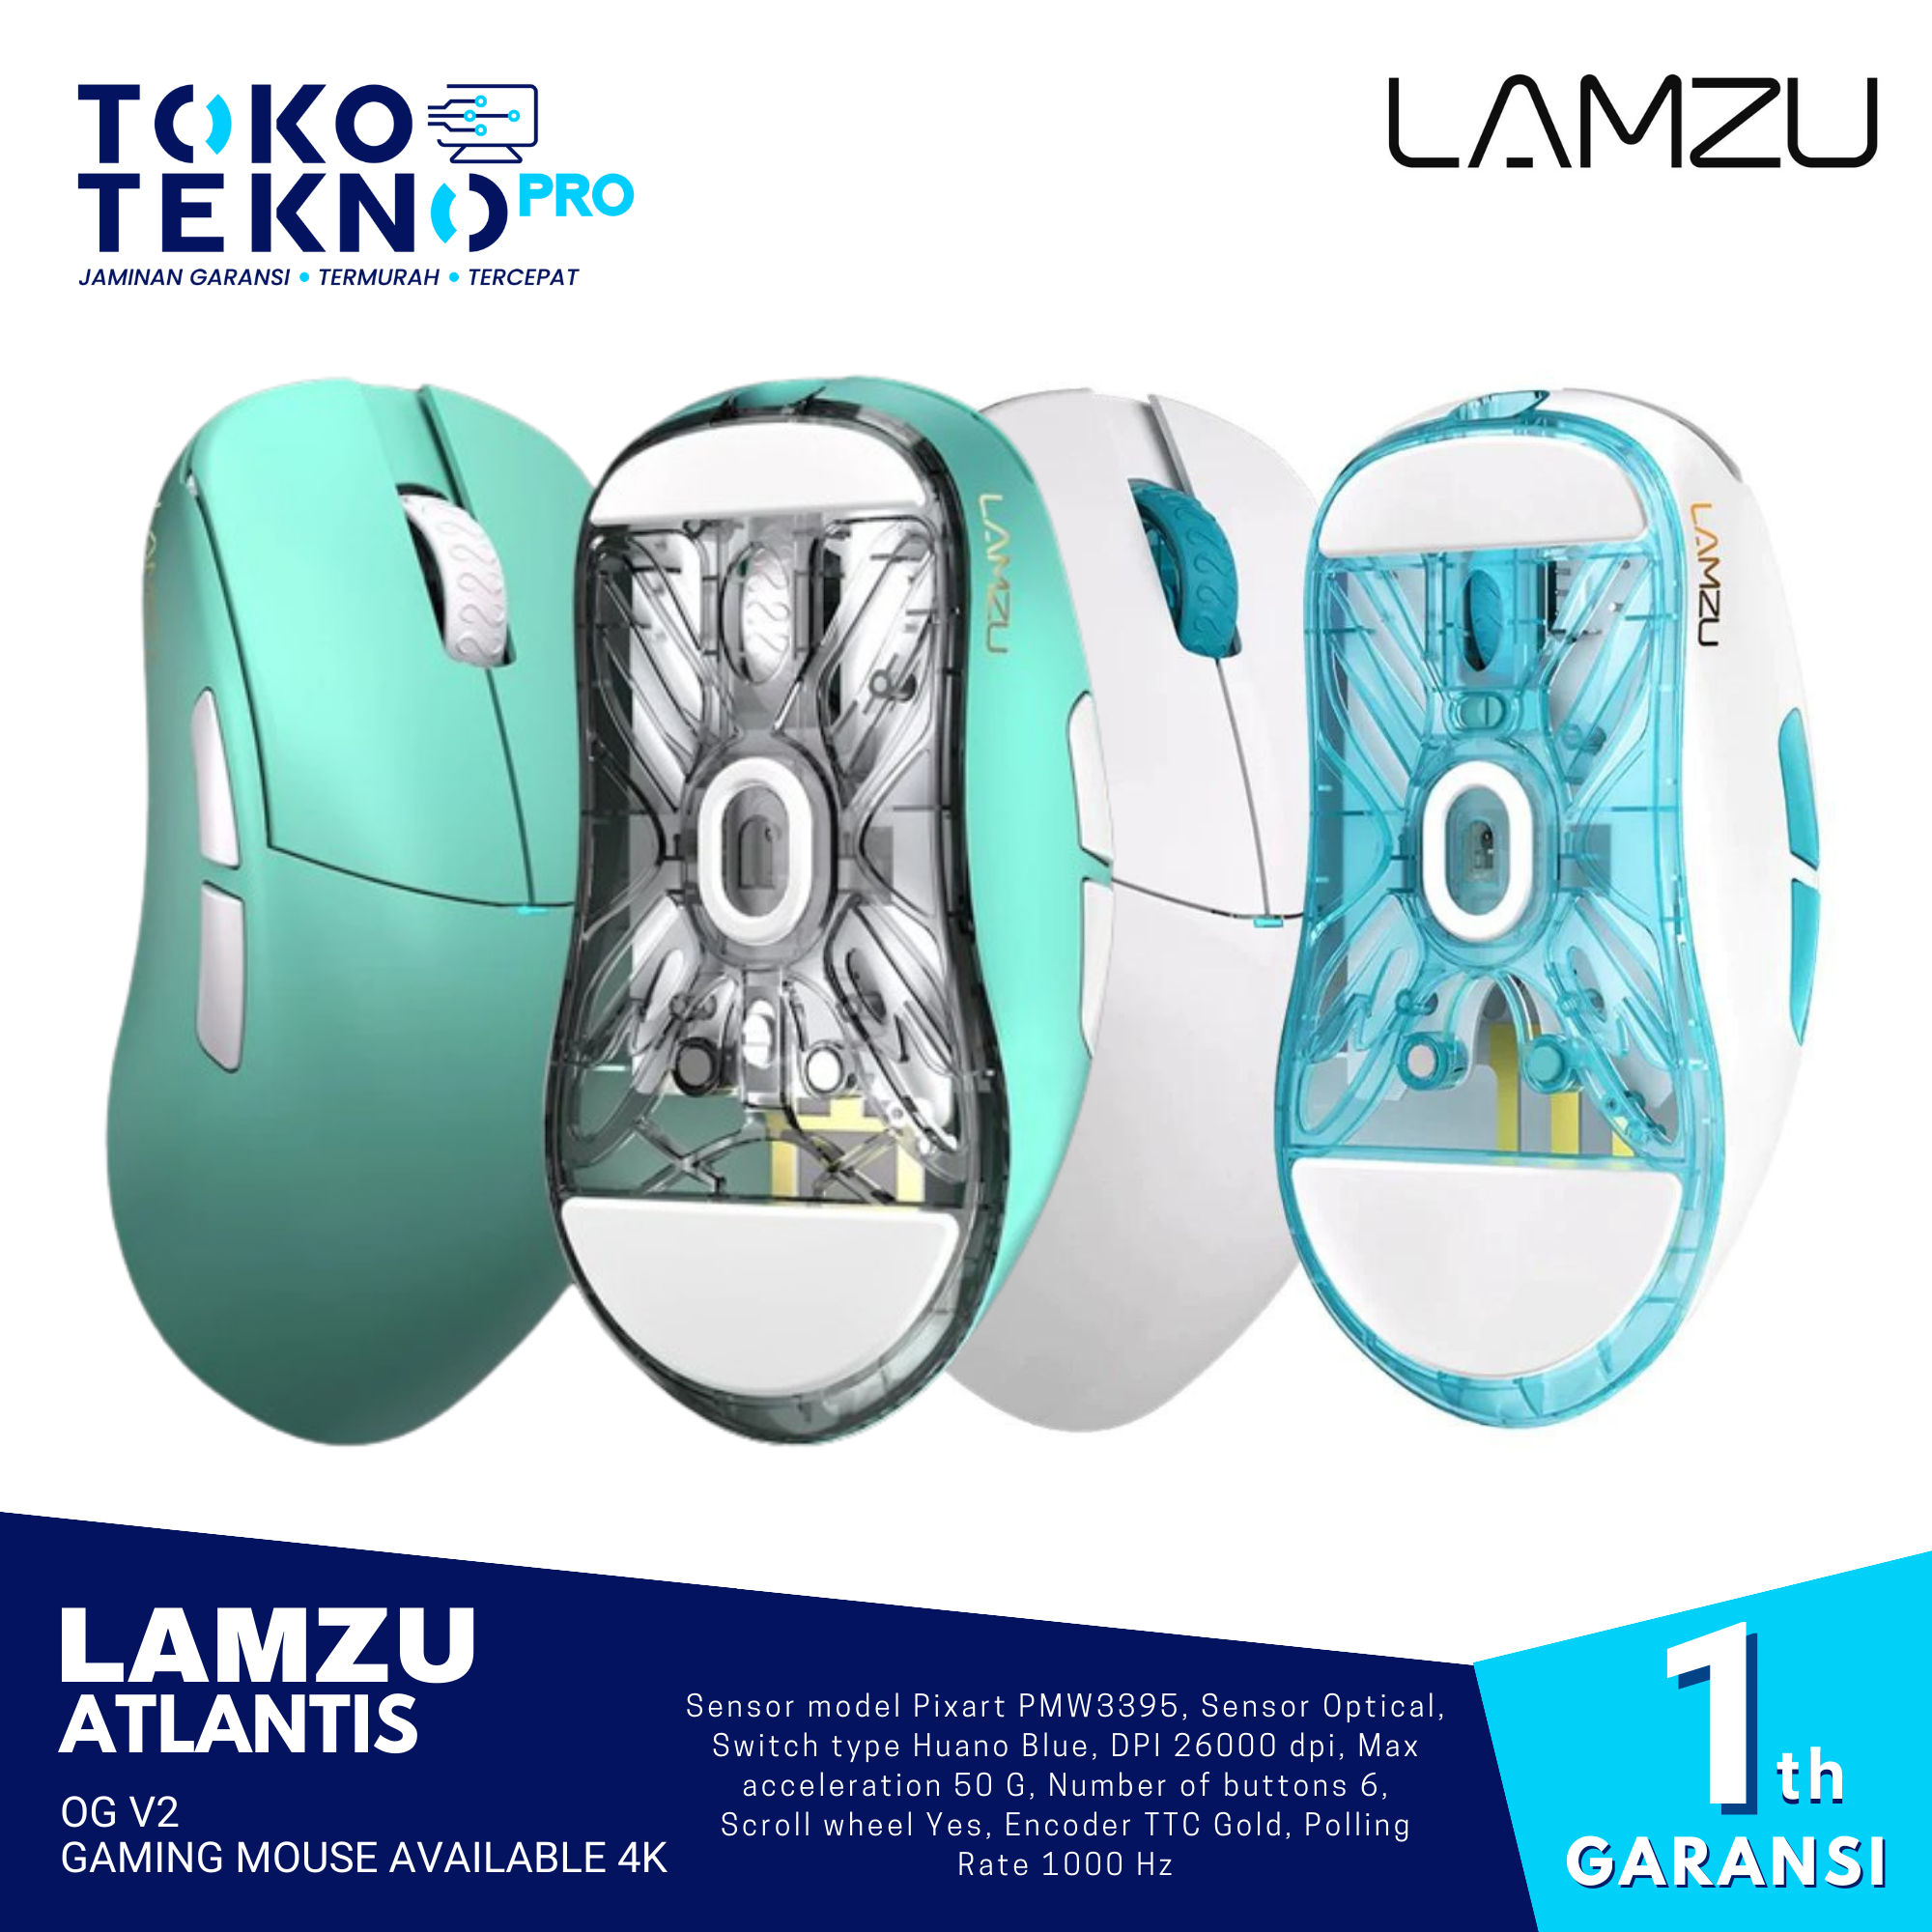 Lamzu Atlantis OG V2 Pro Wireless Superlight Gaming Mouse Available 4K